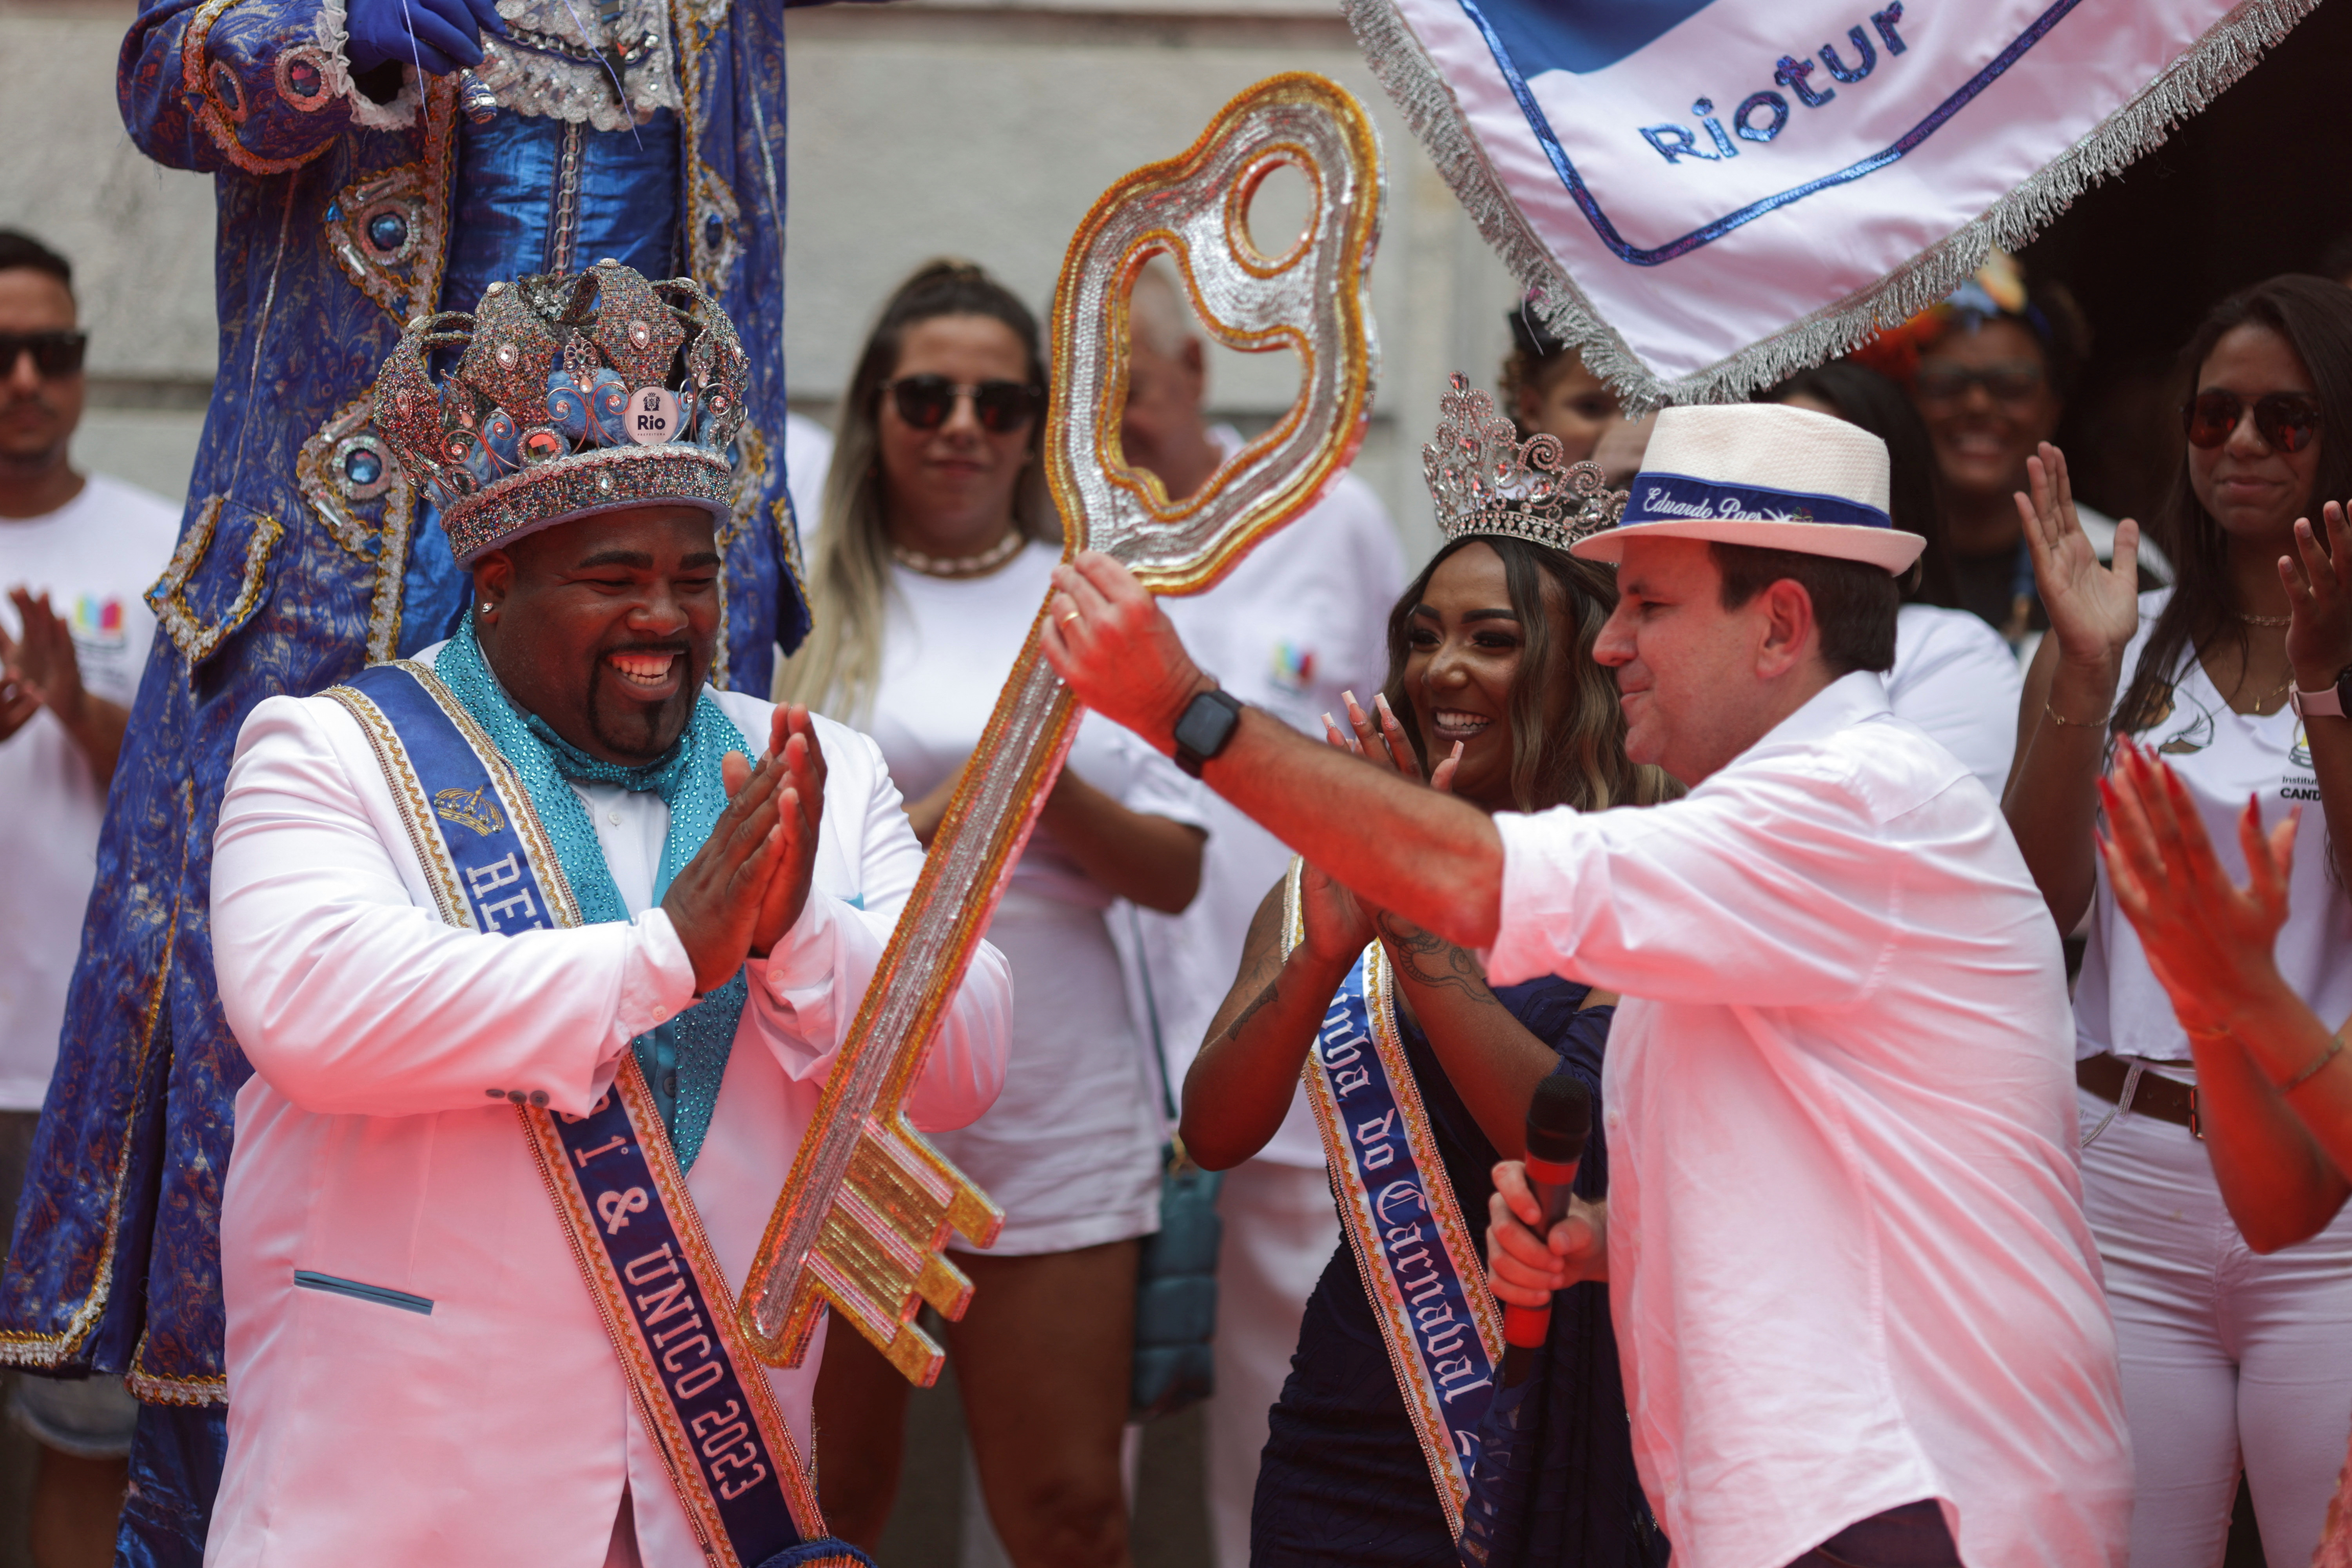 El alcalde de Río de Janeiro, Eduardo Paes, entrega las llaves de la ciudad al "Rei Momo", en el simbólico comienzo del Carnaval ocurrido el viernes 17 de febrero (Foto: REUTERS/Ricardo Moraes)